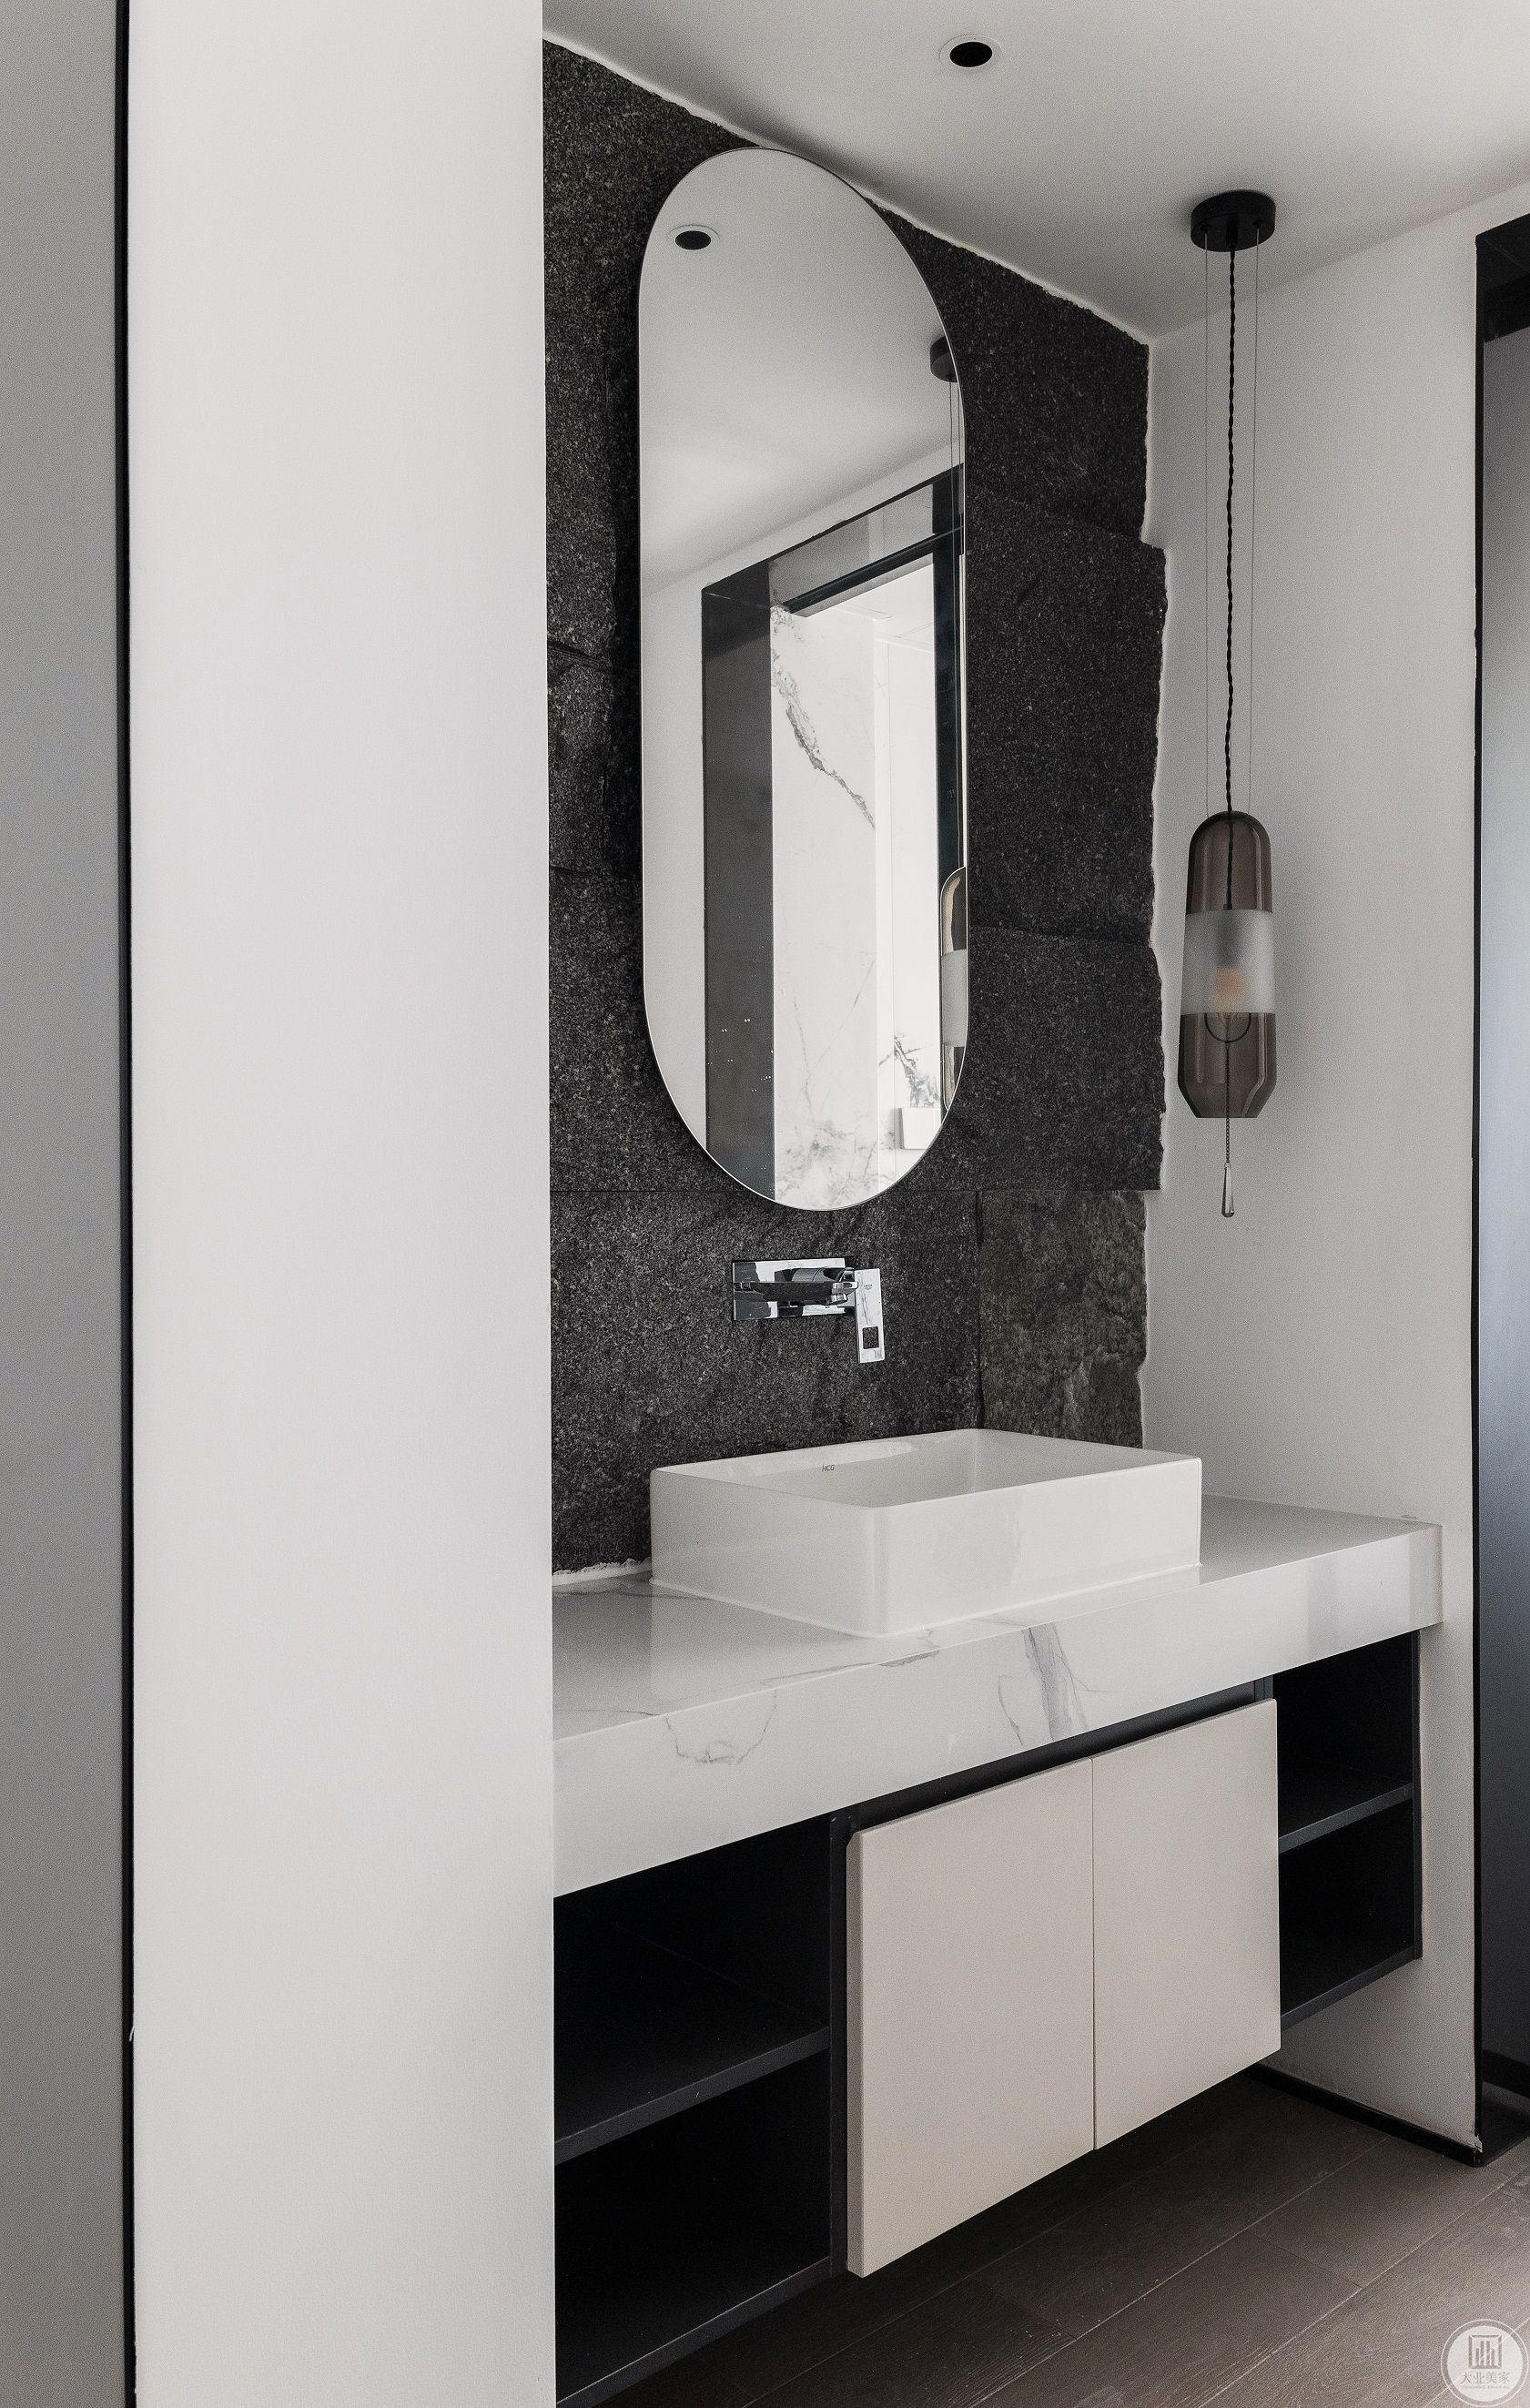 浴室柜内藏式的收纳柜设计，整齐易取，不显杂乱。智能防雾镜的设计低温快速除雾，高颜值，高体验。